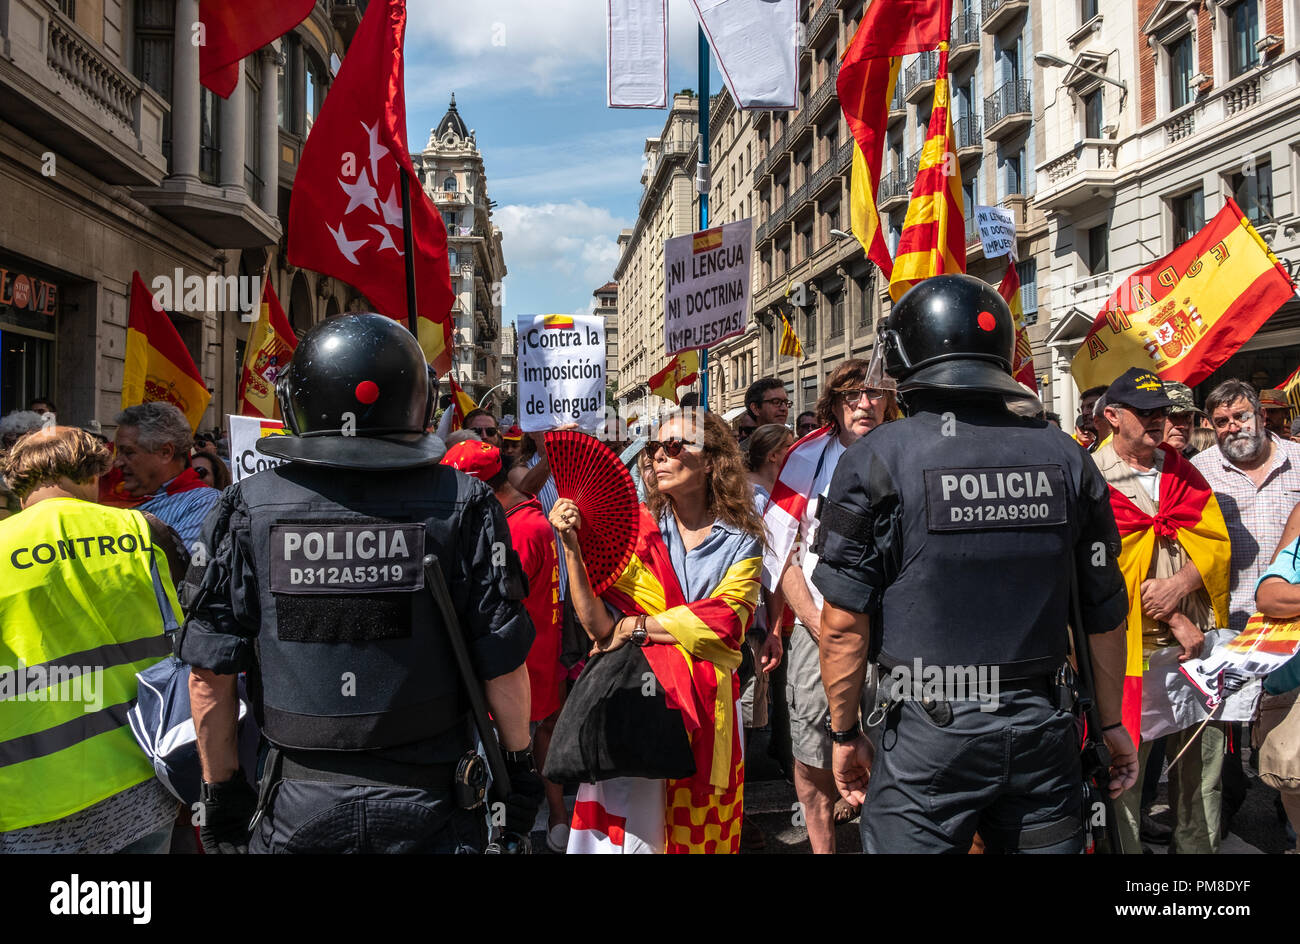 La polizia del Mossos d'esquadra sono visto che bloccano il passaggio per i nazionalisti spagnoli durante la protesta. Più di 1.500 persone chiamato dagli enti a favore della lingua spagnola hanno marciato attraverso il centro di Barcellona per protestare contro l'imposizione della lingua catalana in spagnolo. Alla fine della dimostrazione, gruppi di nazionalisti spagnoli e catalani hanno sovereignists stato affrontato sotto la vigilanza della polizia catalana. Foto Stock